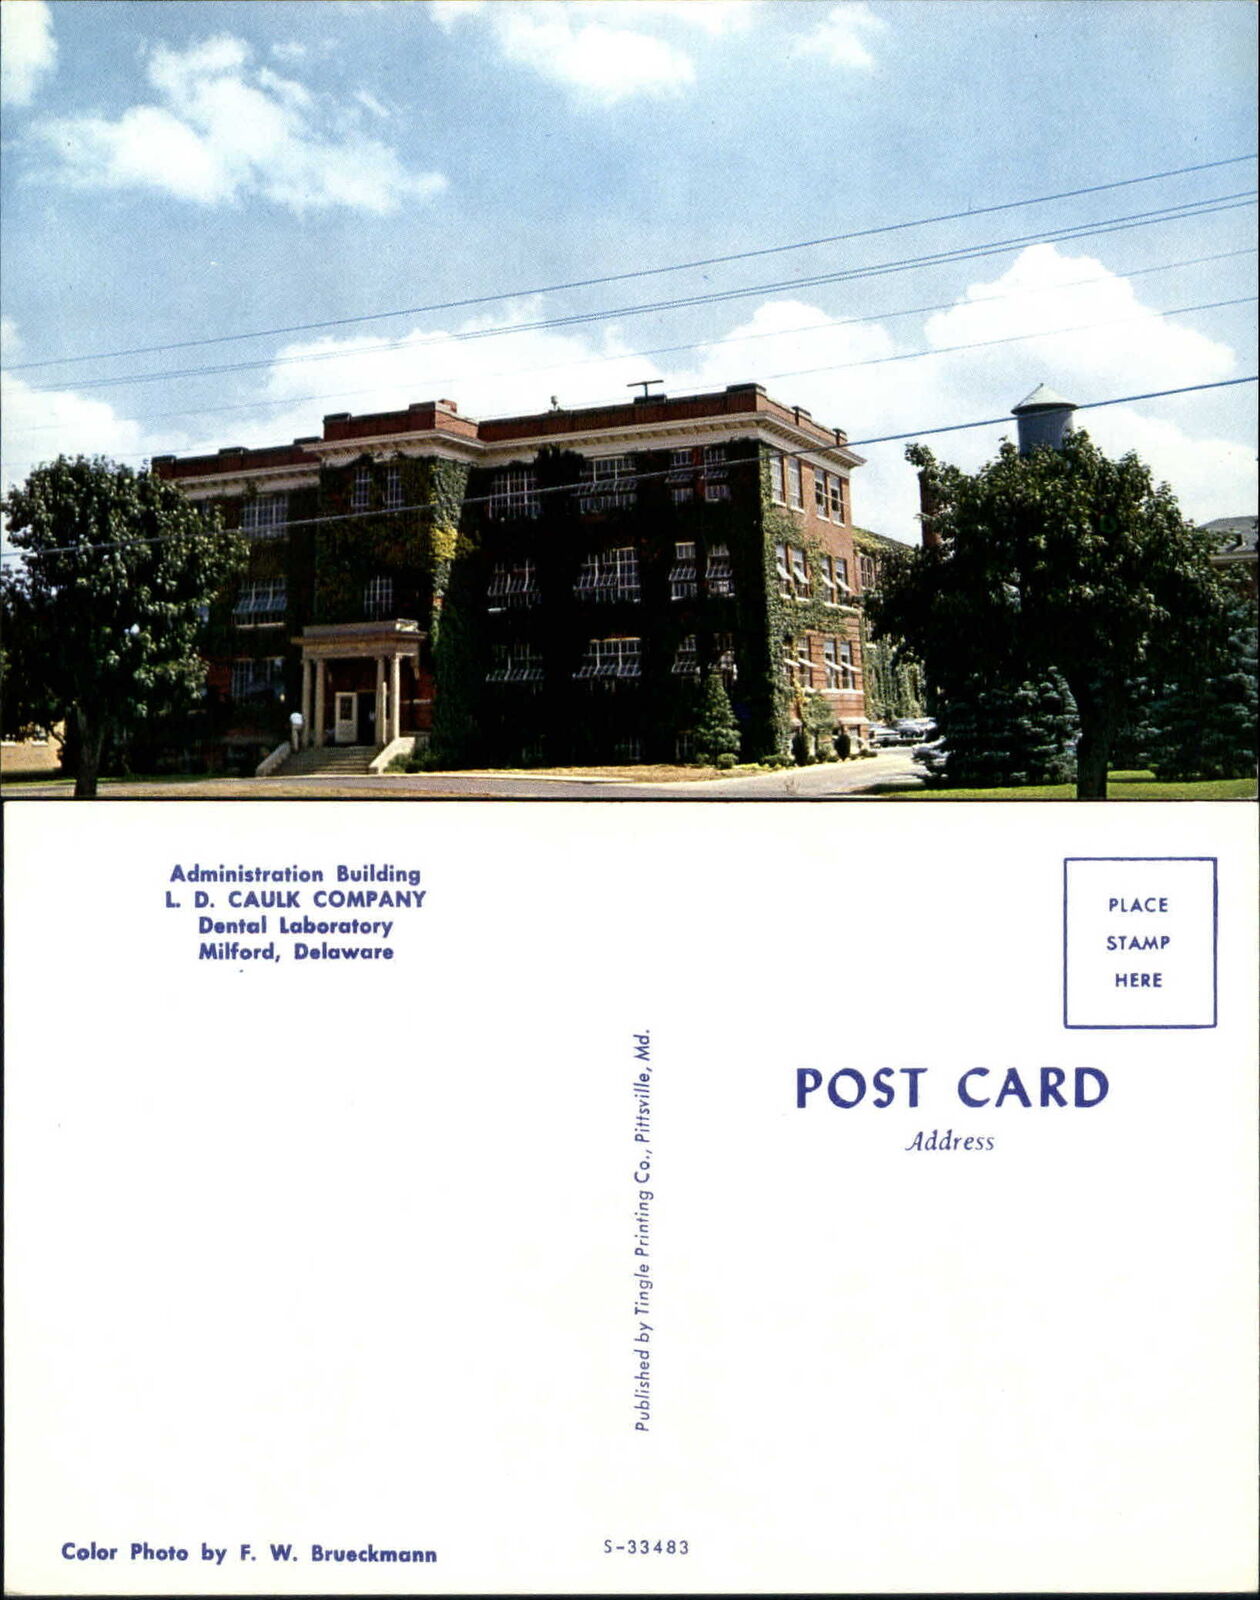 L.D. Caulk Company Dental Laboratory Milford Delaware DE 1960s postcard